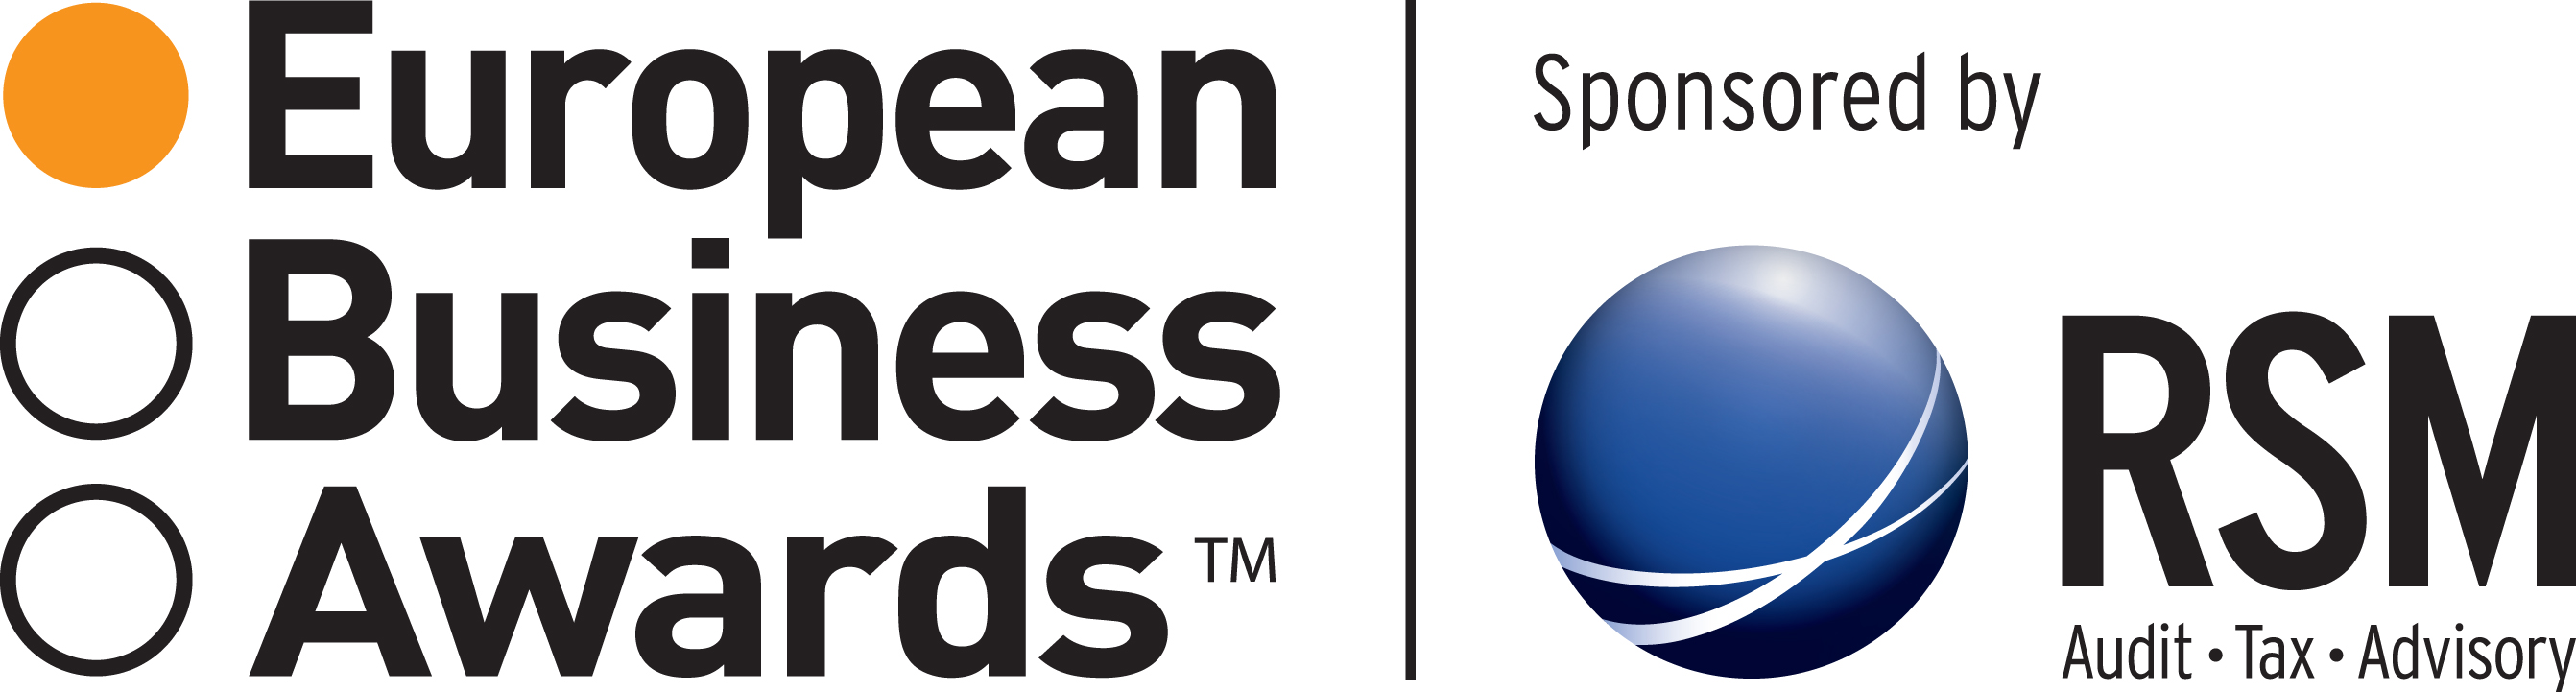 Kompania Piwowarska zdobywcą tytułu National Champion w konkursie European Business Awards 2014/15